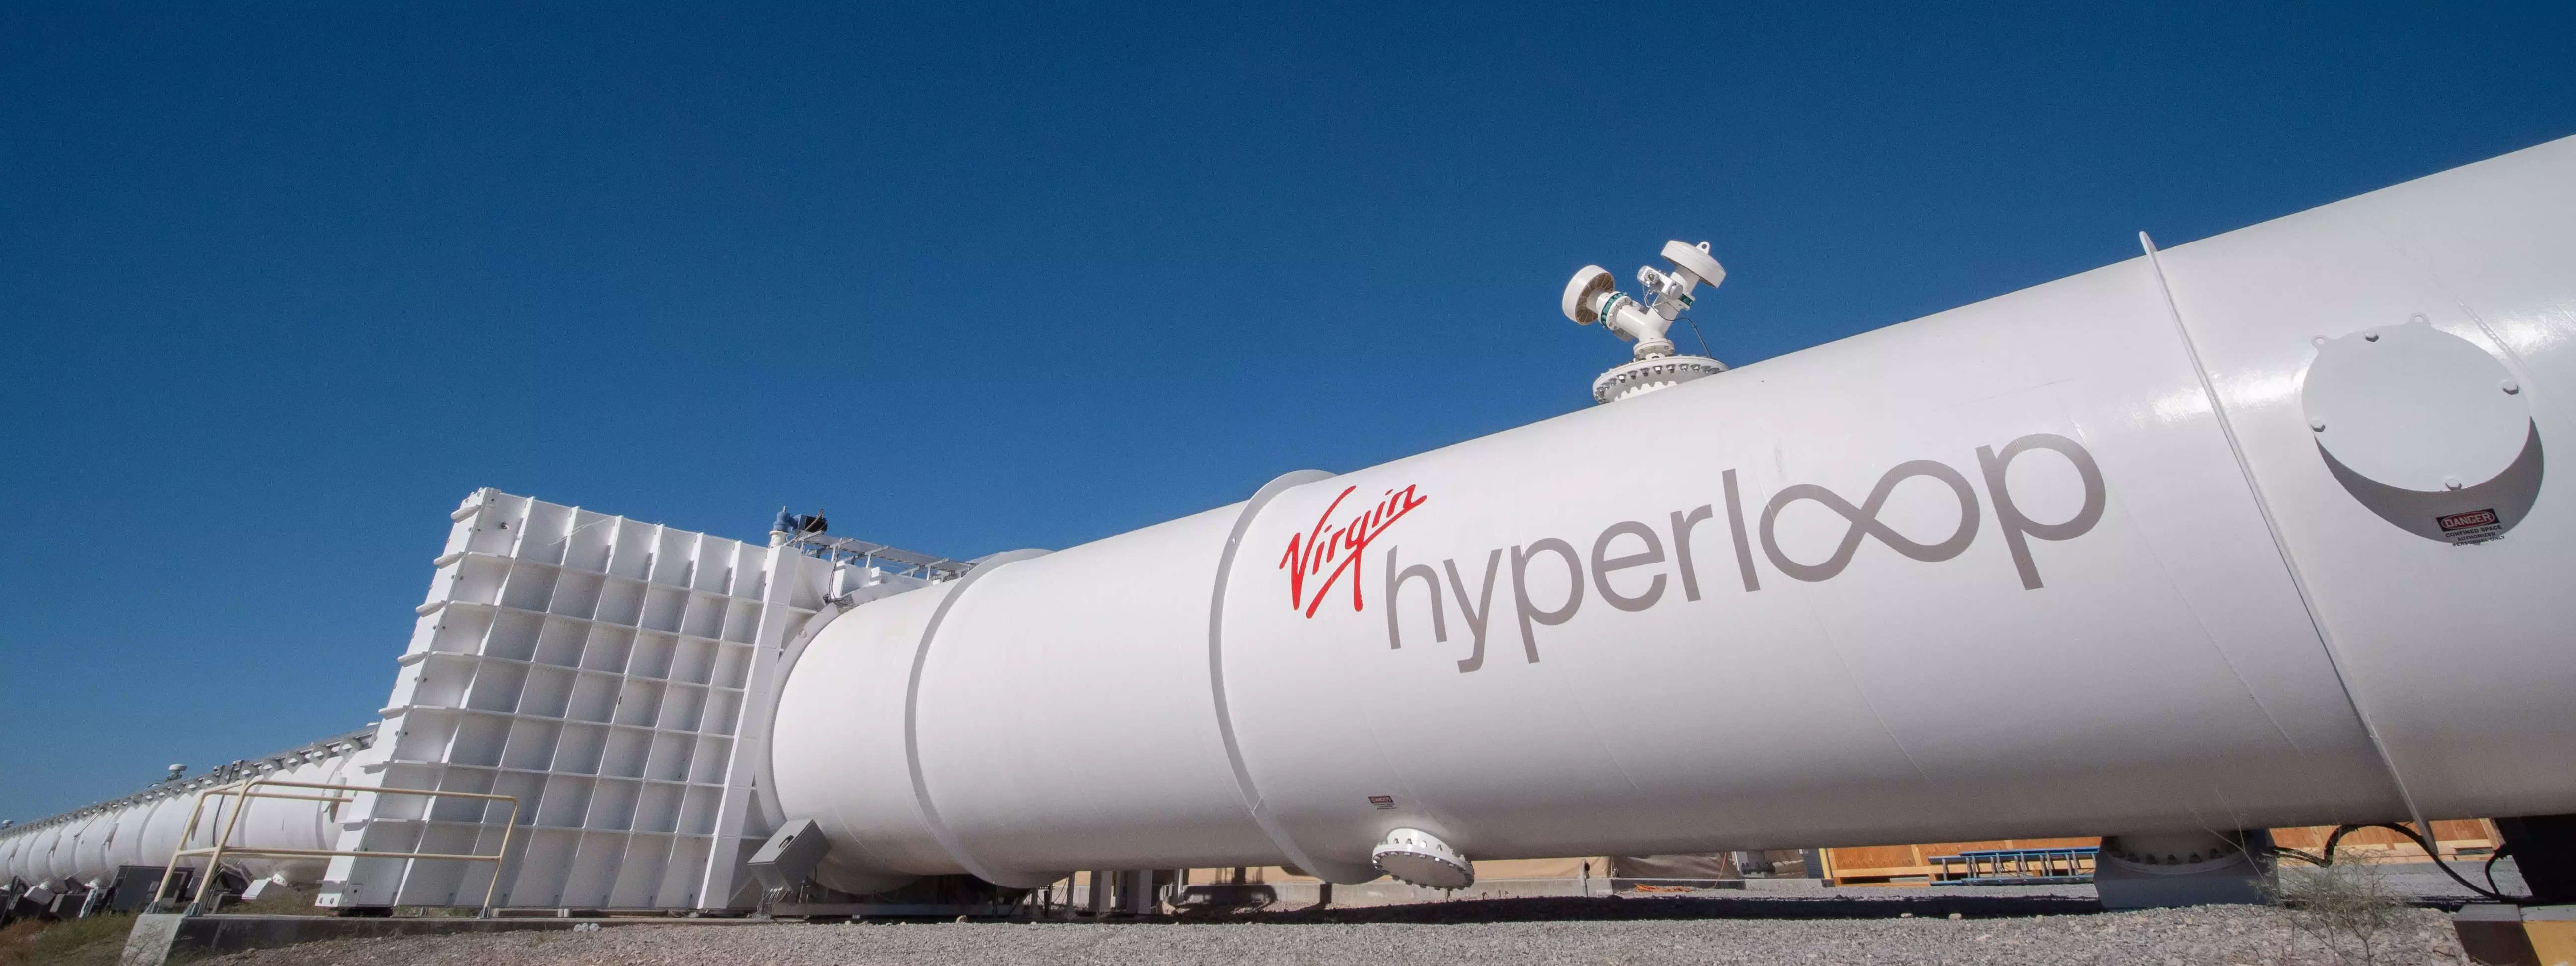 virgin hyperloop: Virgin Hyperloop fires half of its workforce, to focus on  cargO, Auto News, ET Auto